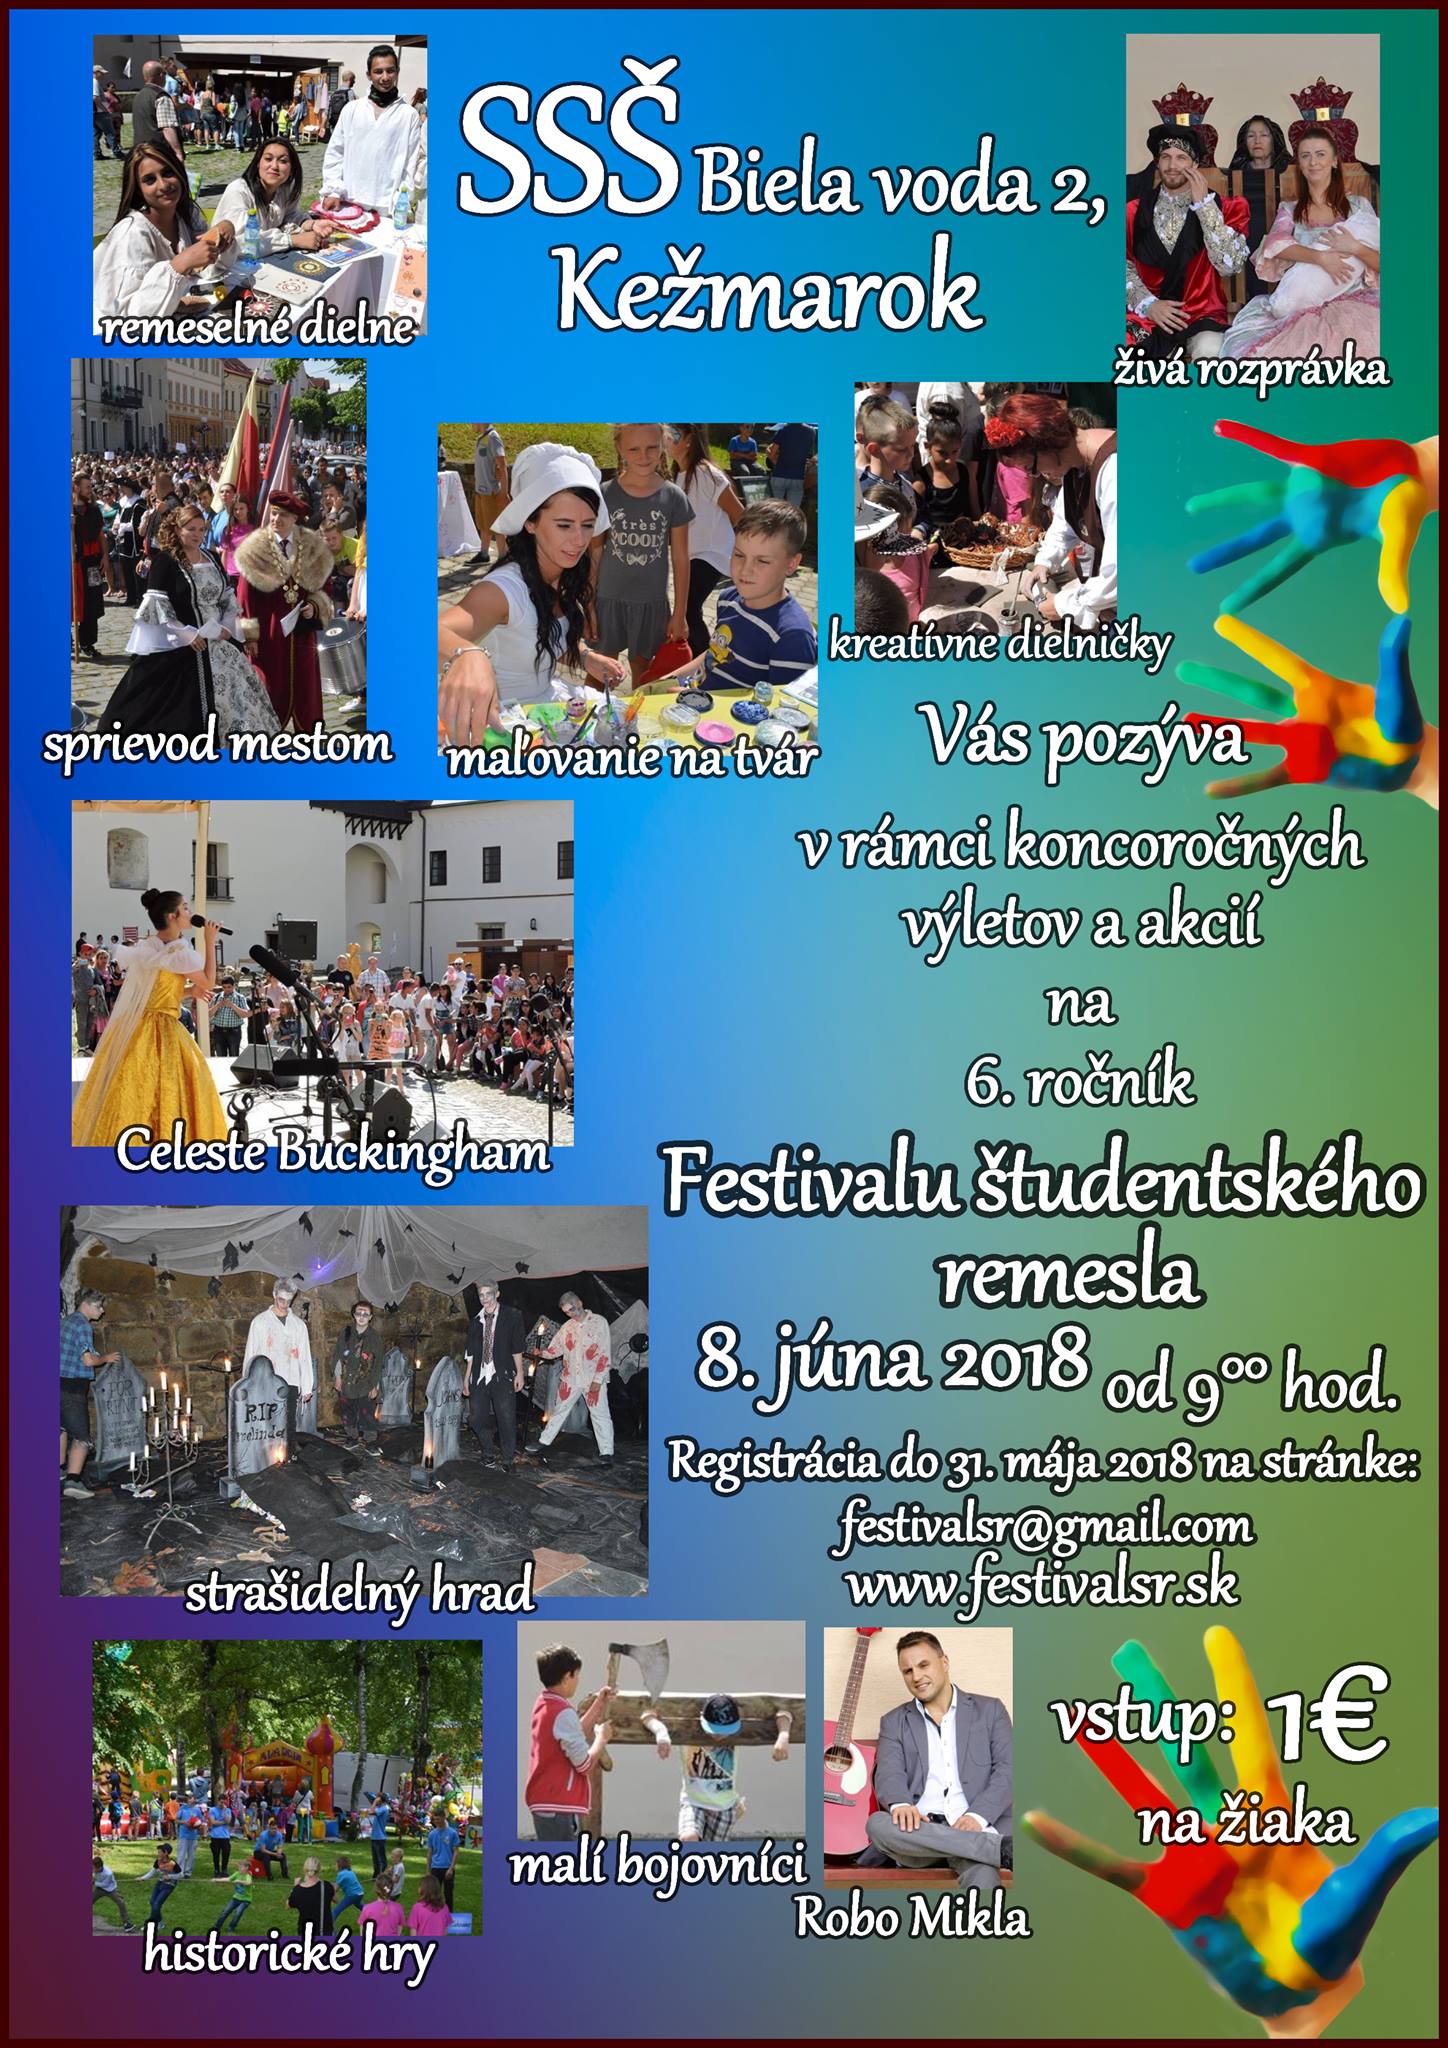 Festival študentského remesla - Hlavný plagát k podujatiu